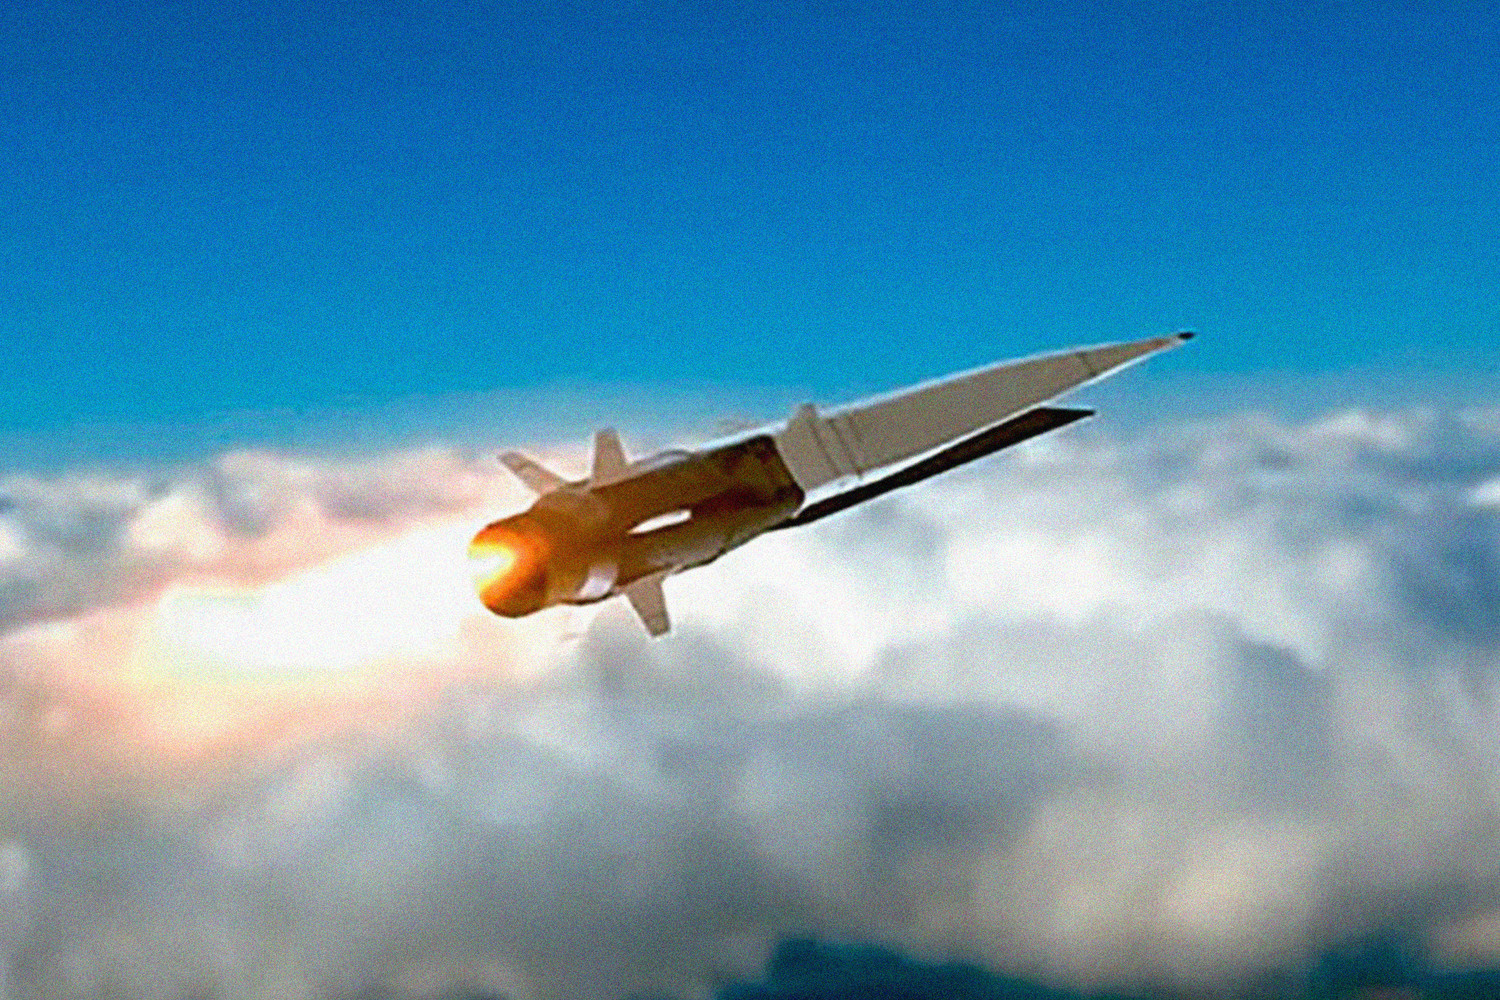 Гиперзвуковая противокорабельная крылатая ракета «Циркон» может в 5-6 раз превышать скорость звука. Фото: Минобороны России / YouTube